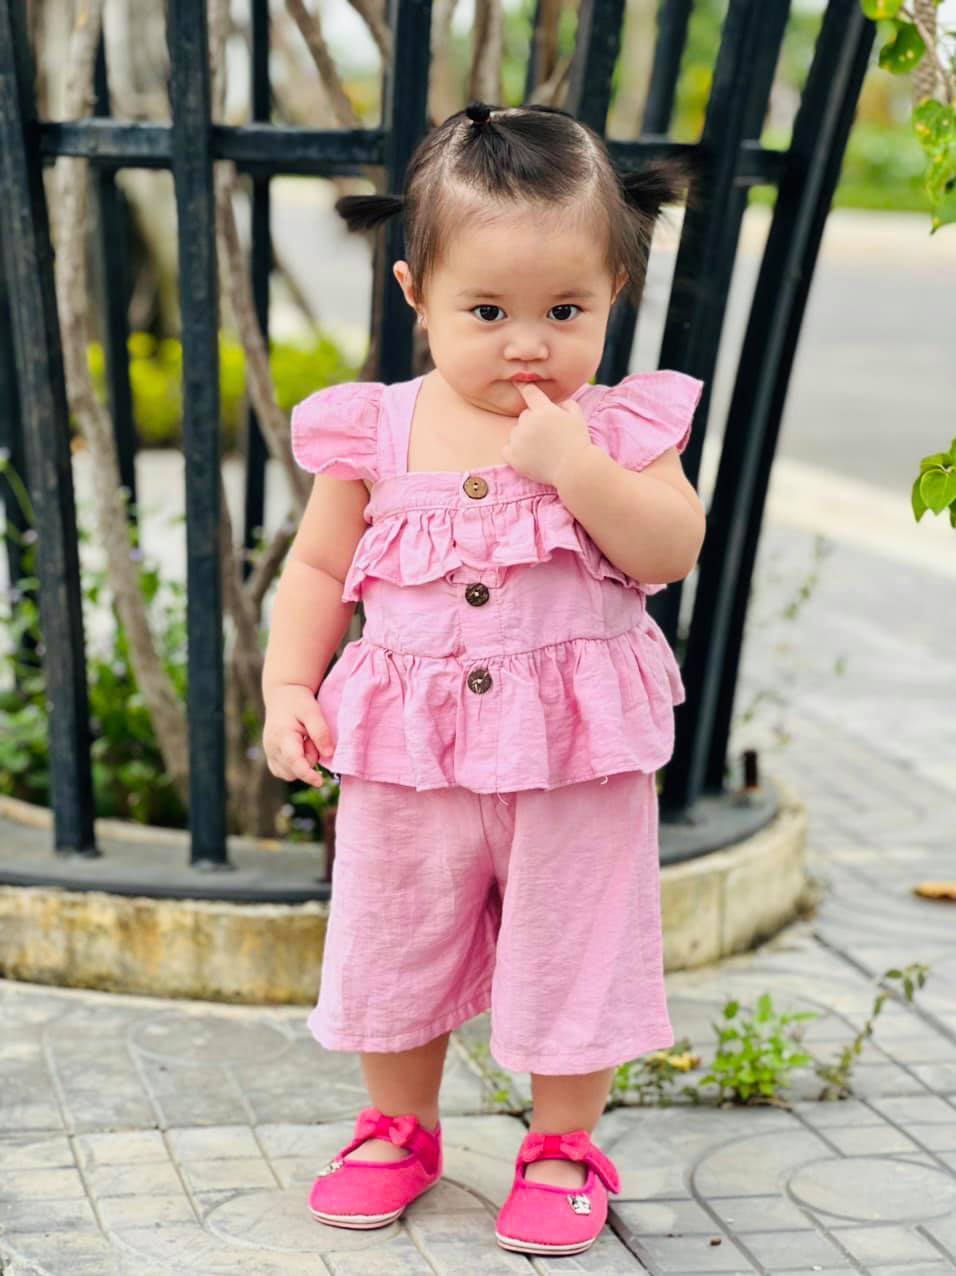  
Vừa hơn 1 tuổi, nhóc tì thứ 2 nhà Lê Dương Bảo Lâm đã được sắm nhiều váy áo điệu đà. Cô bé cũng rất chịu hợp tác khi đứng trước ống kính của phụ huynh. (Ảnh: FBNV)